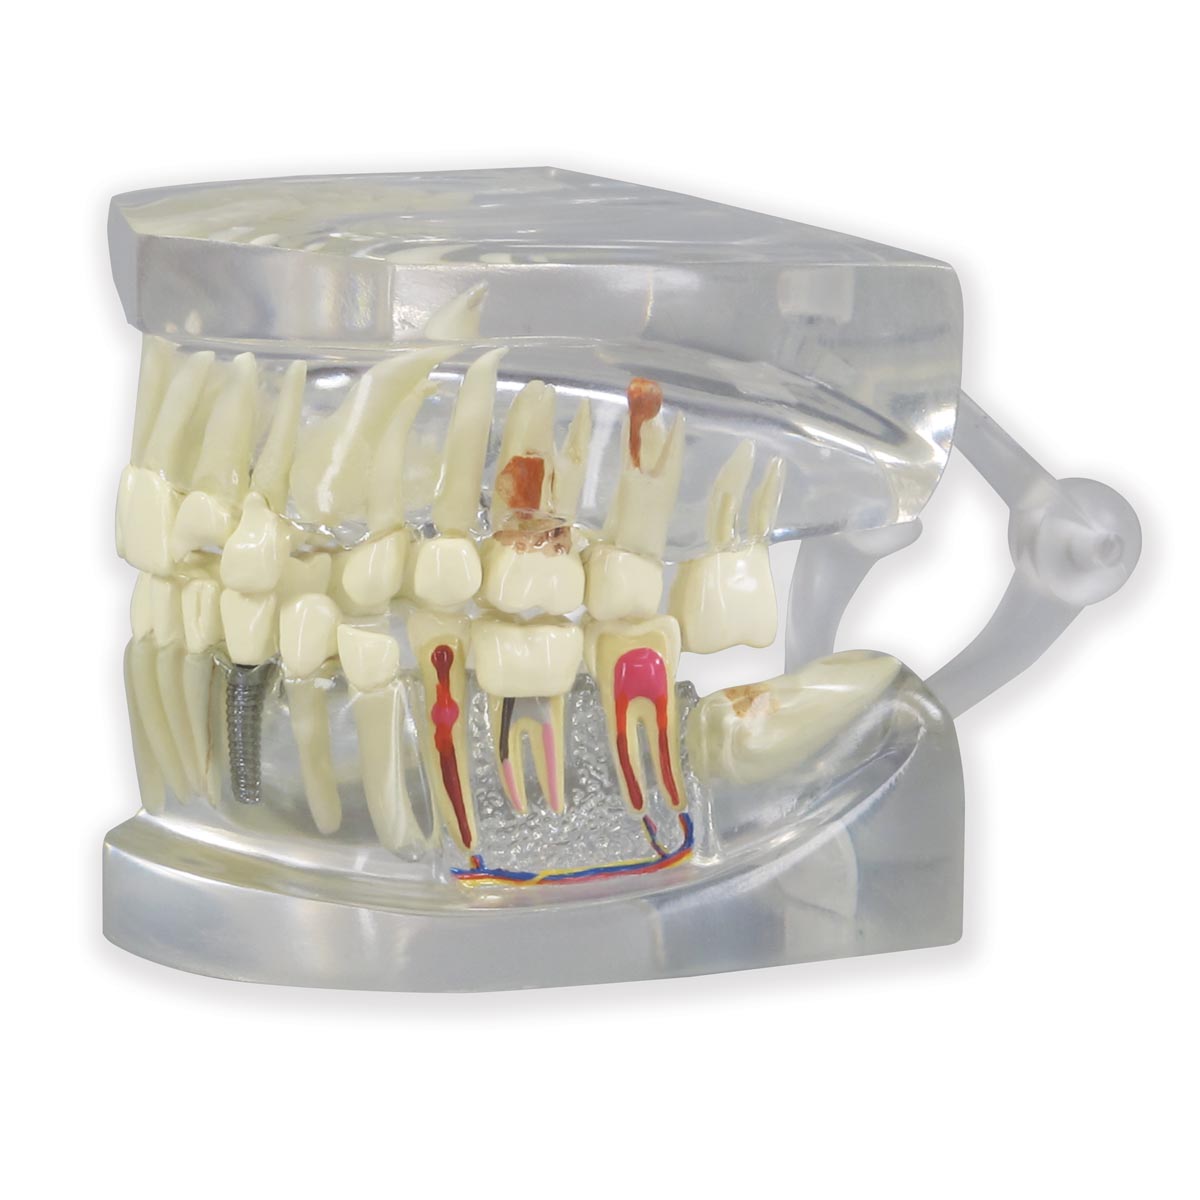 Durchsichtiger menschlicher Kiefer mit Zahnmodell, Bestellnummer 1019540, 2861, GPI Anatomicals